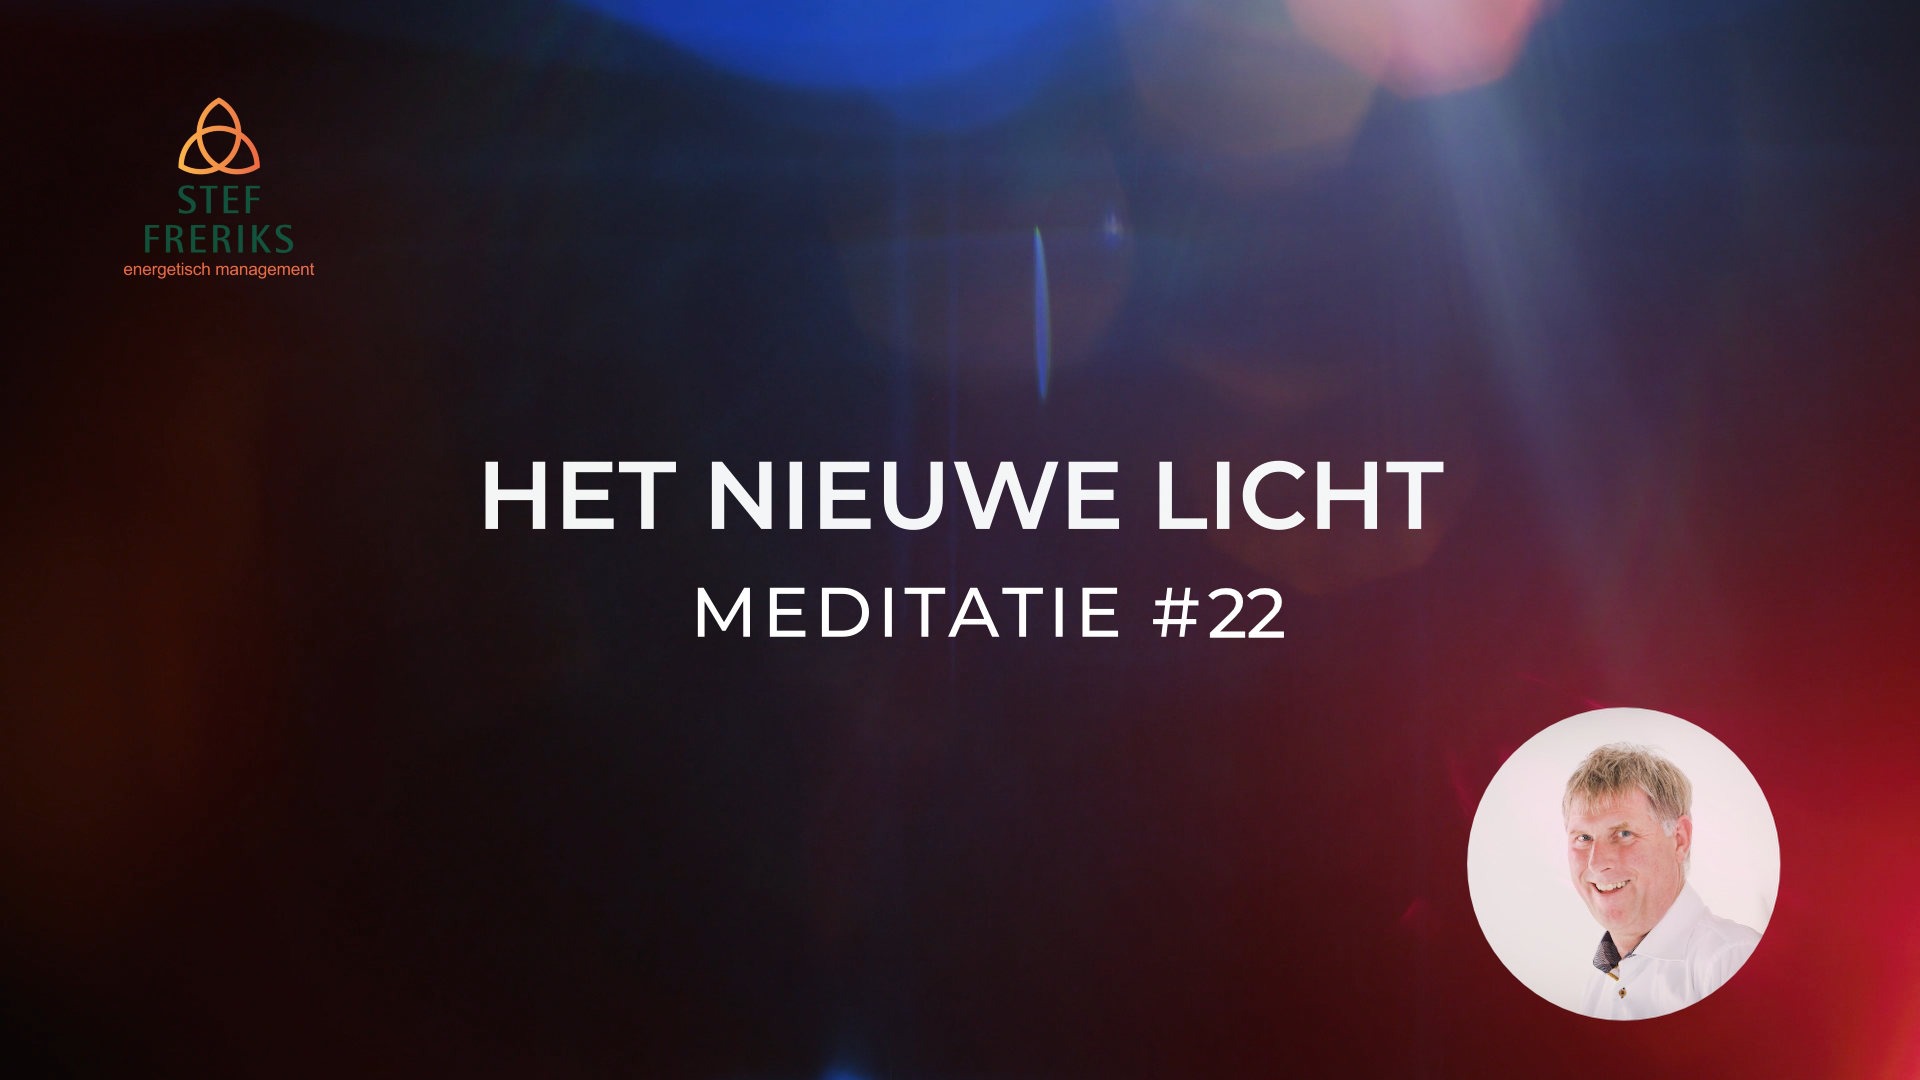 Meditatie #22 uit de serie Het Nieuwe Licht: Kosmische wet 3 – Samenwerkende energievormen